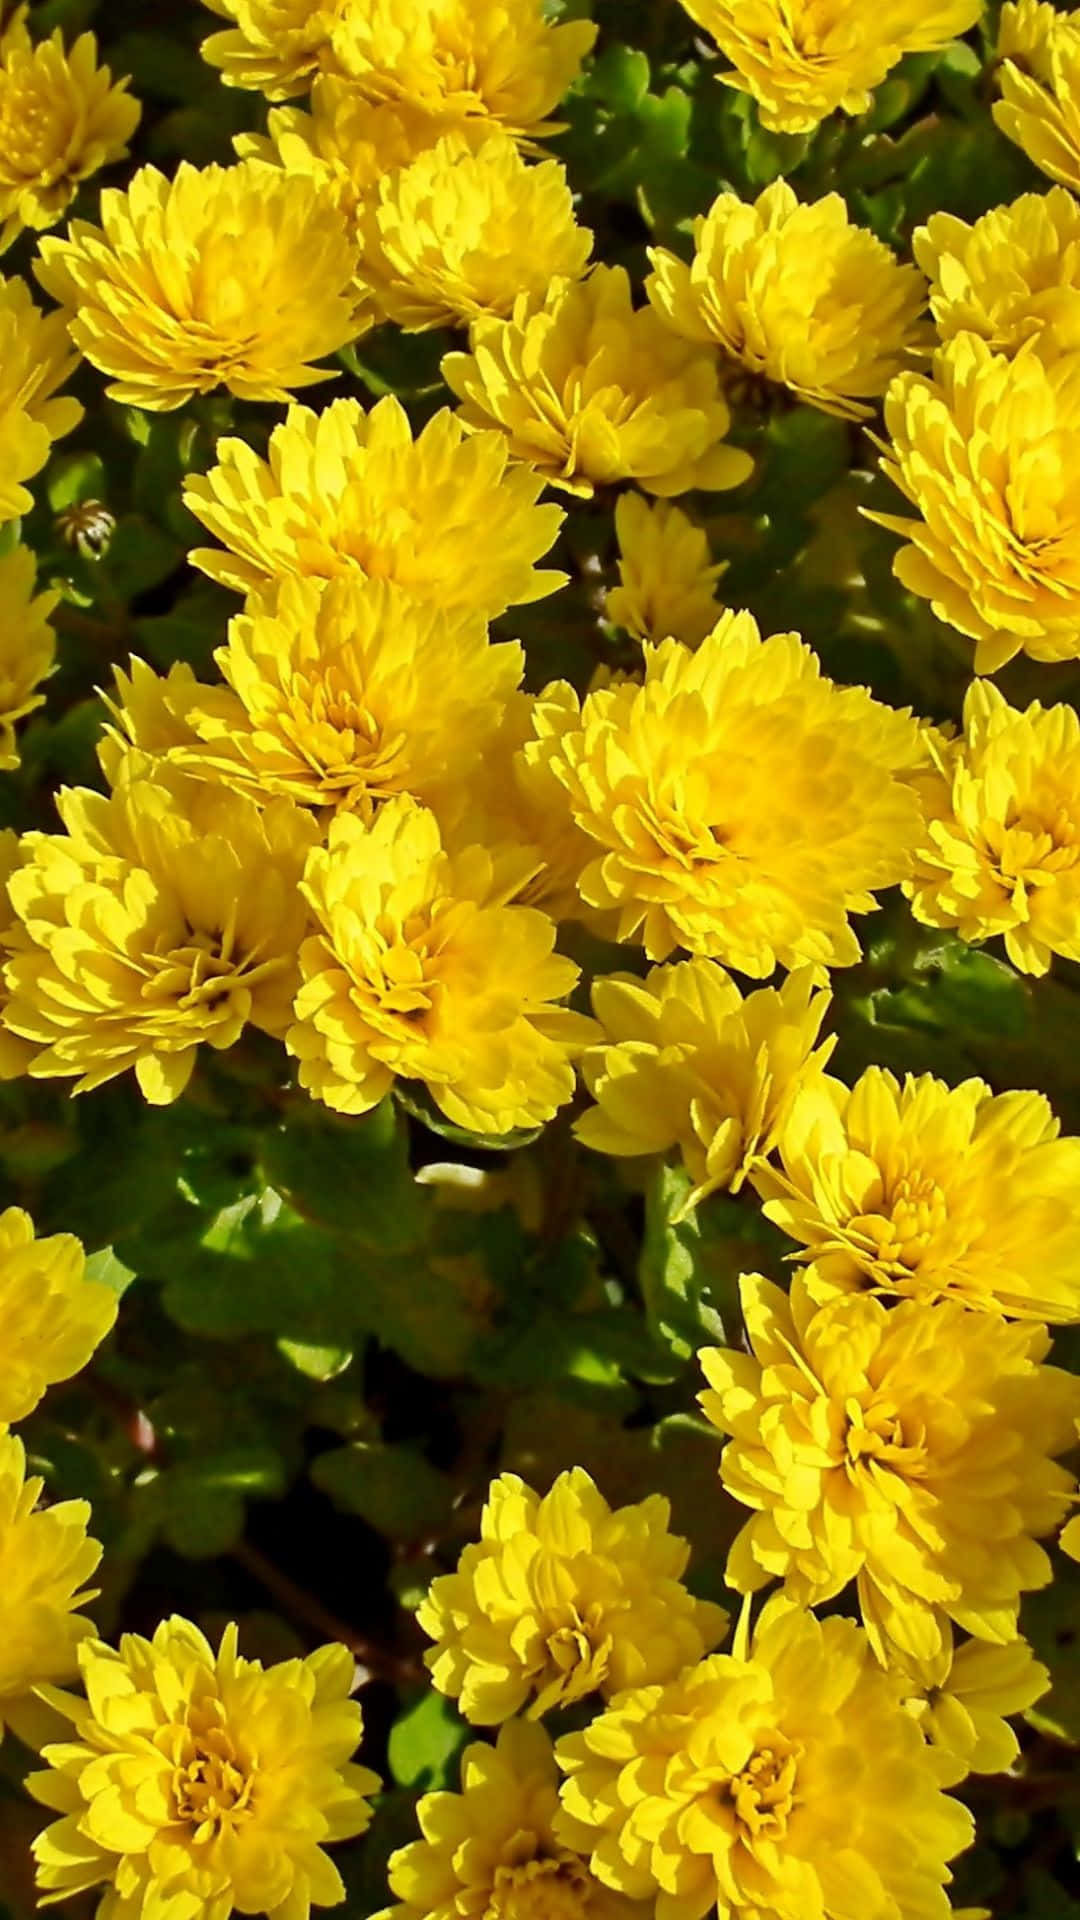 Vibrant Yellow Flower in Full Bloom